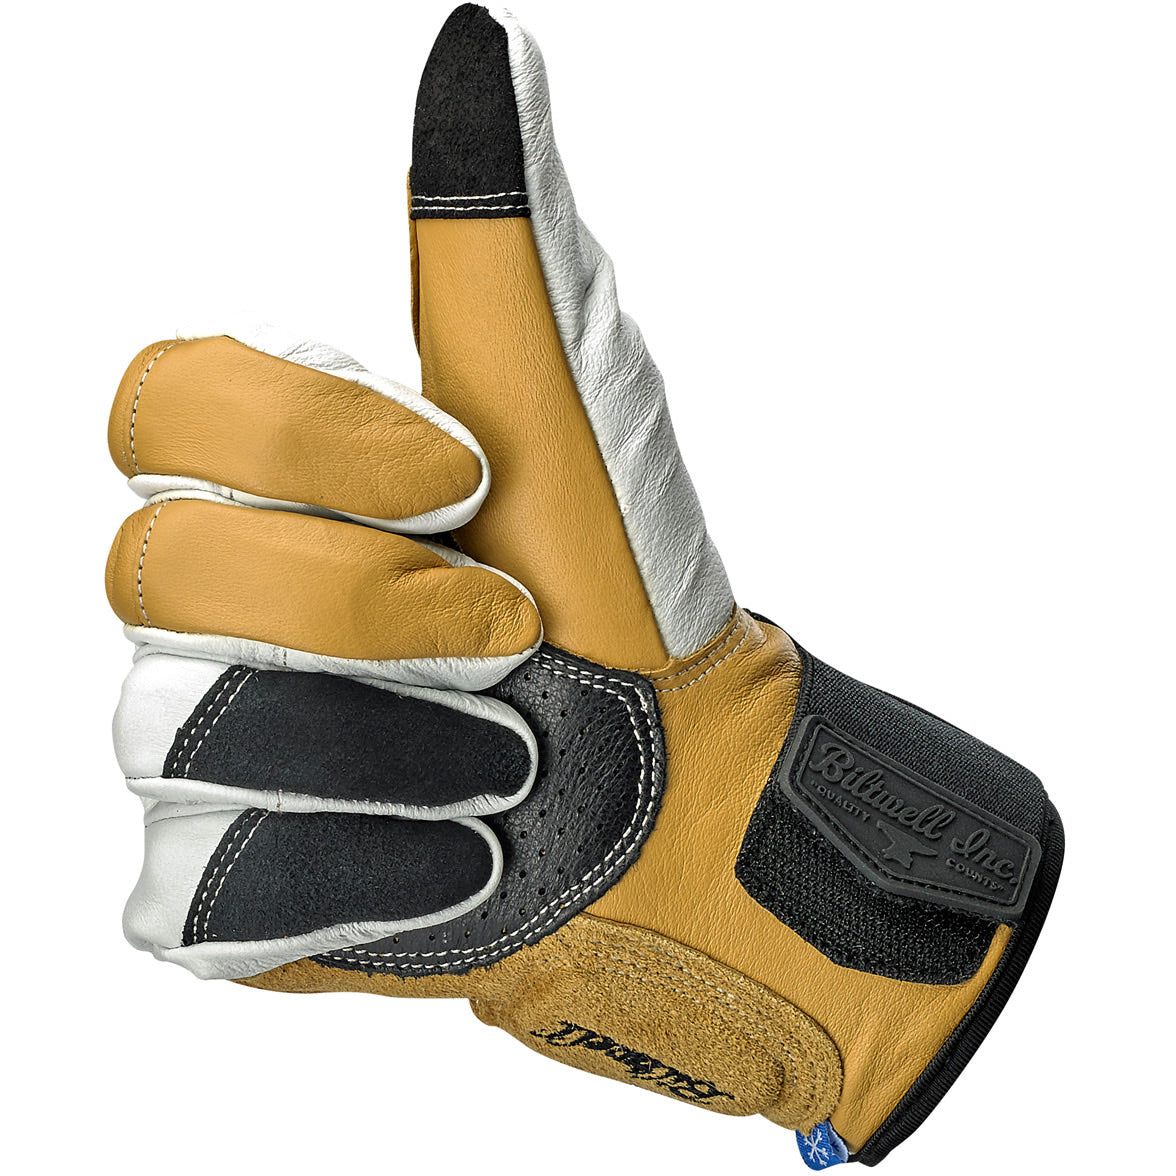 Belden Gloves - Cement